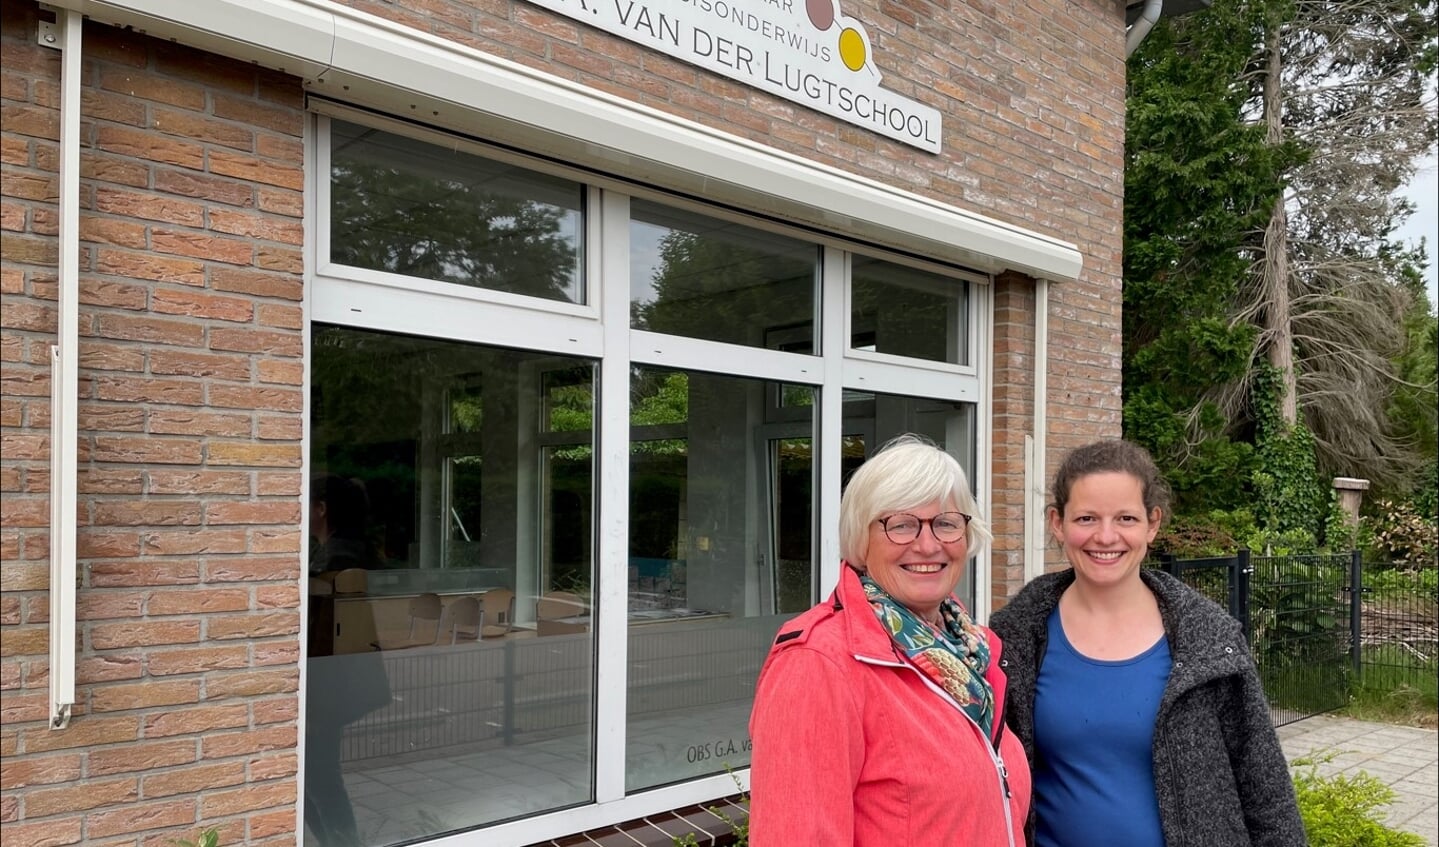 Ria Morssink en Nardi Strijbos (r) voor de G.A. Van der Lugtschool in Gelselaar waar de afgelopen jaren de lessen werden verzorgd. Foto: Leander Grooten 